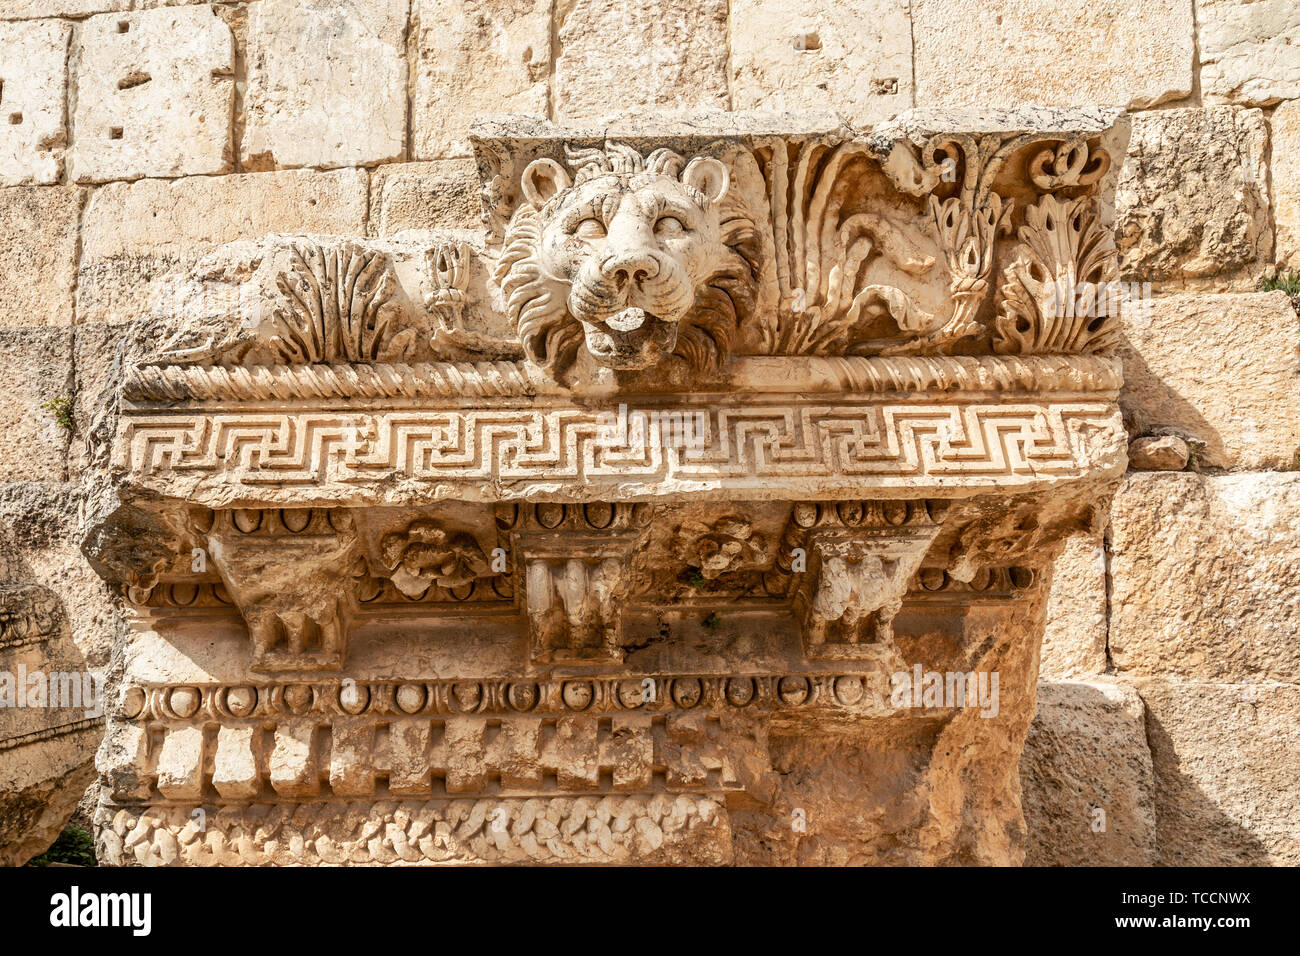 Tête de lion, le mur romain à l'ornement du temple de Bacchus, vallée de la Bekaa, à Baalbek, Liban Banque D'Images